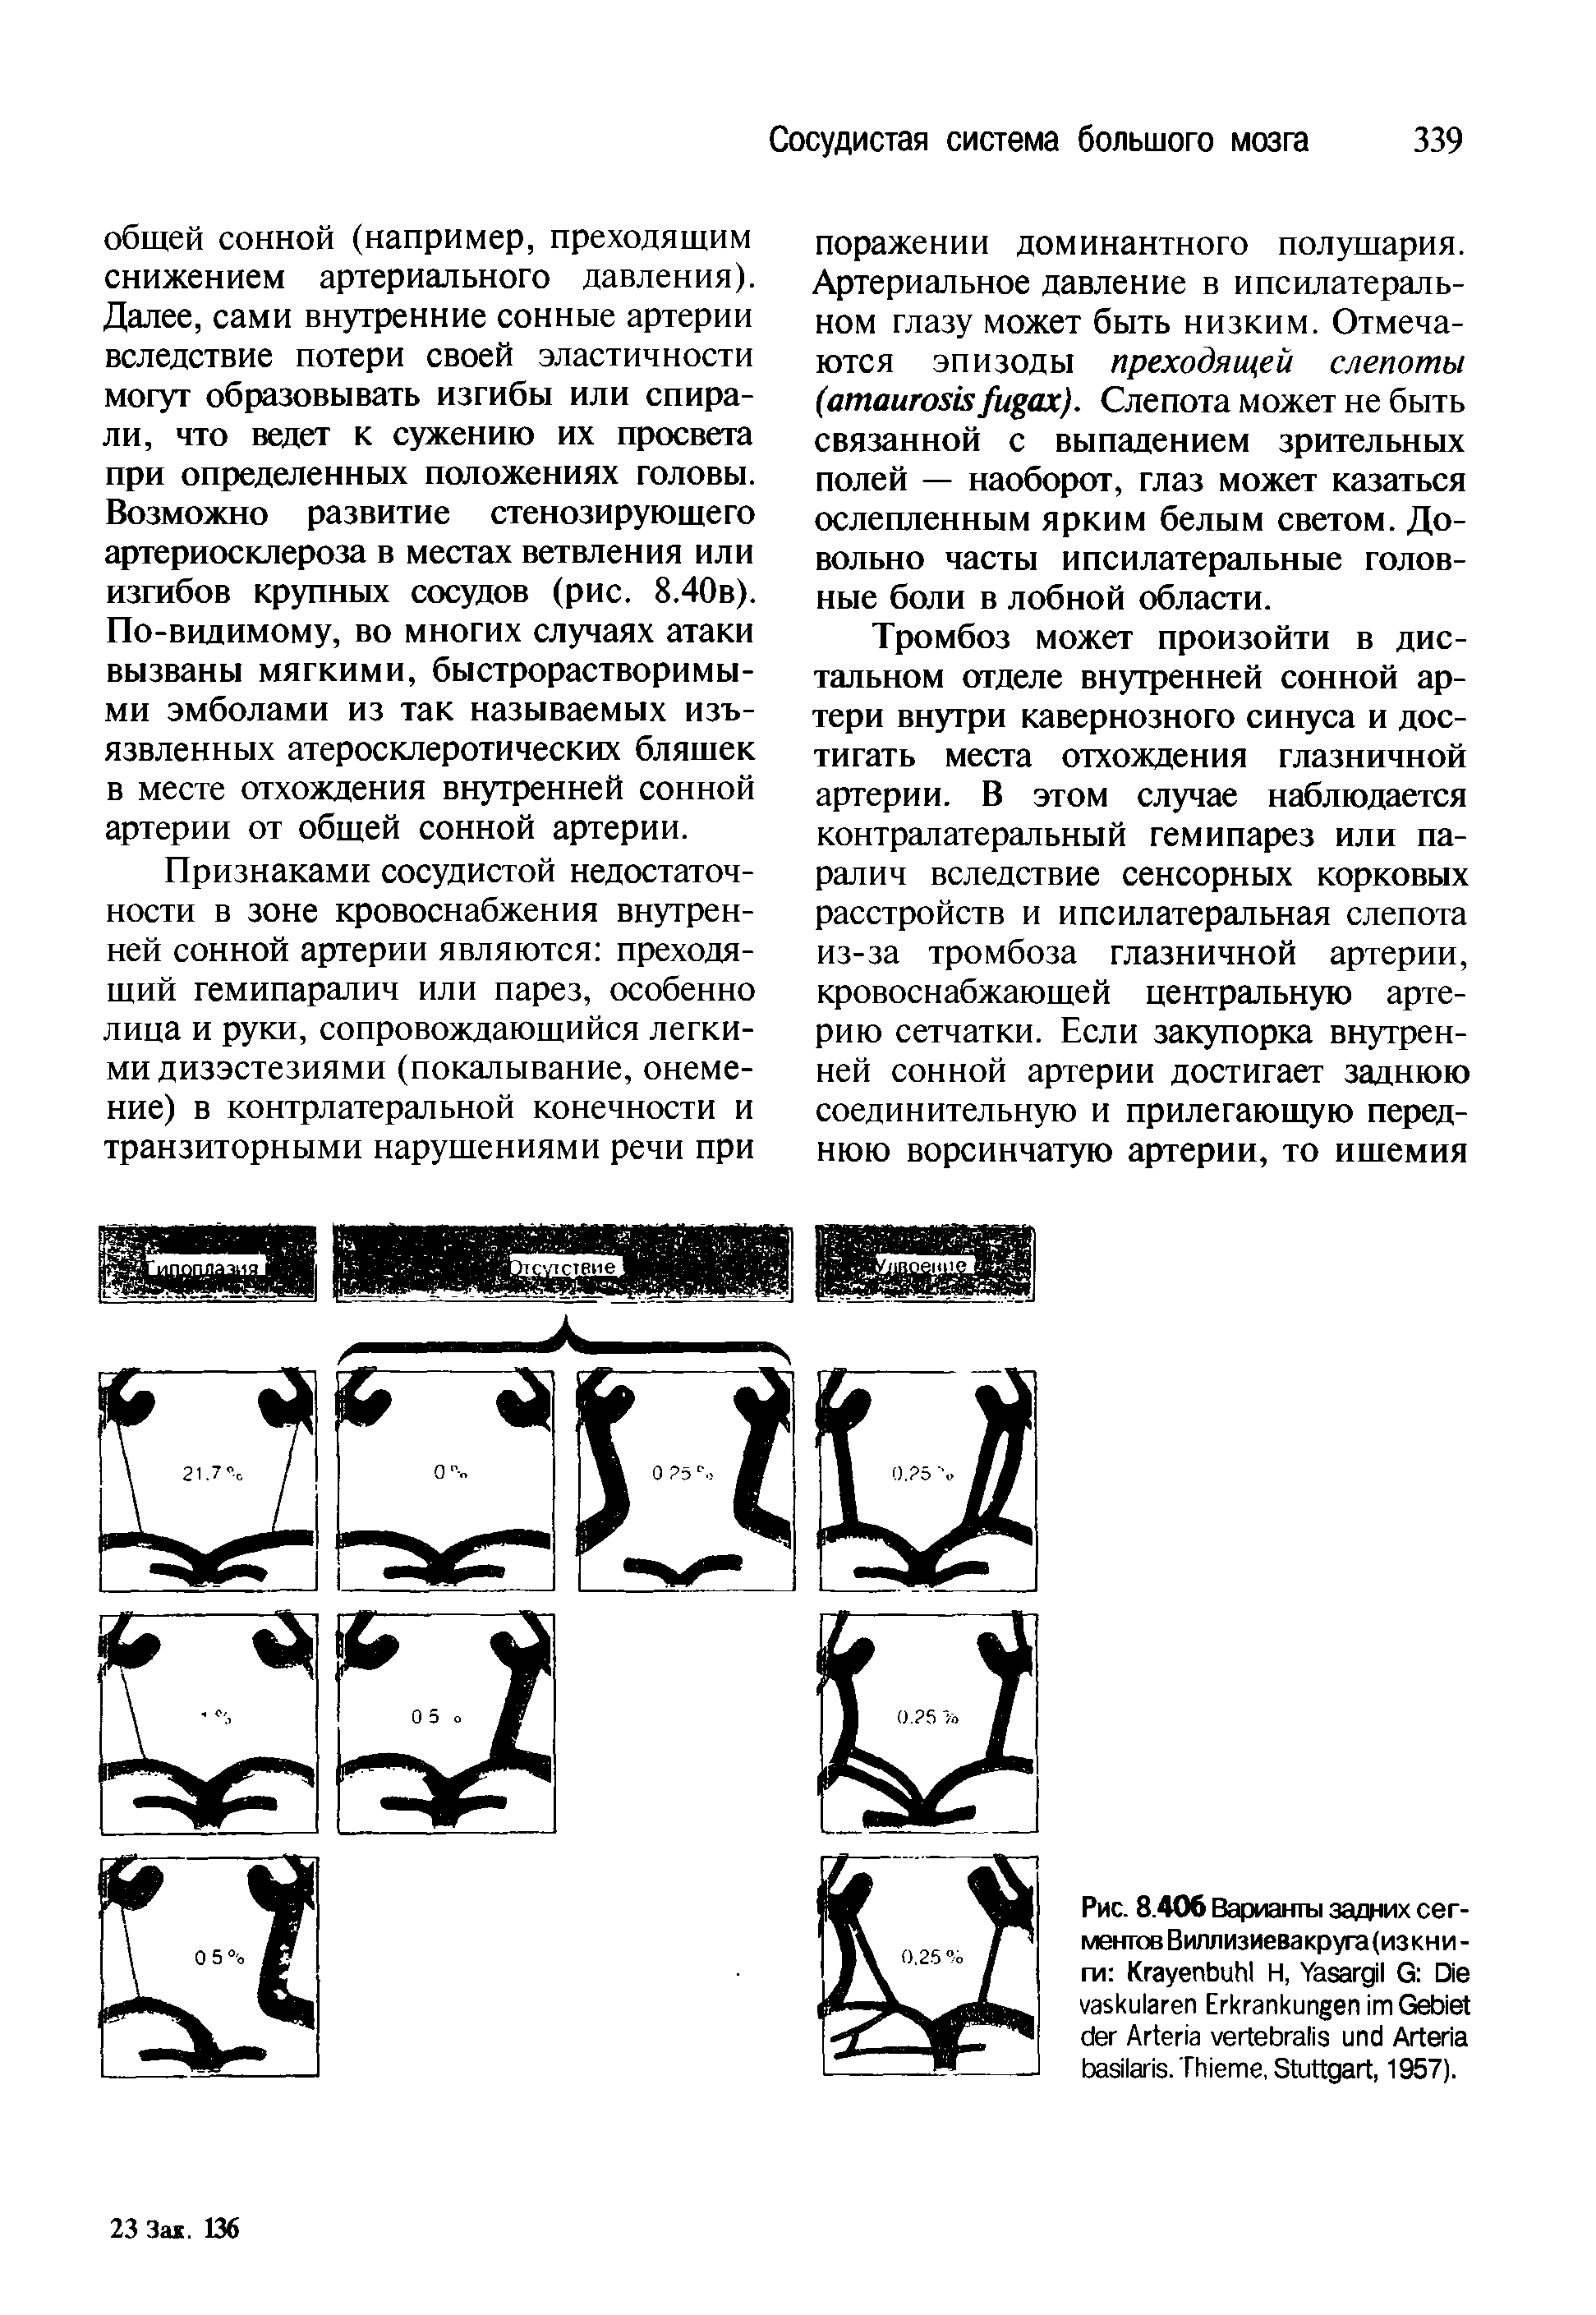 Рис. 8.406 Варианты задних сегментов Виллизиевакруга(изкни -ги K Н, Y G D E G A A . T , S , 1957).